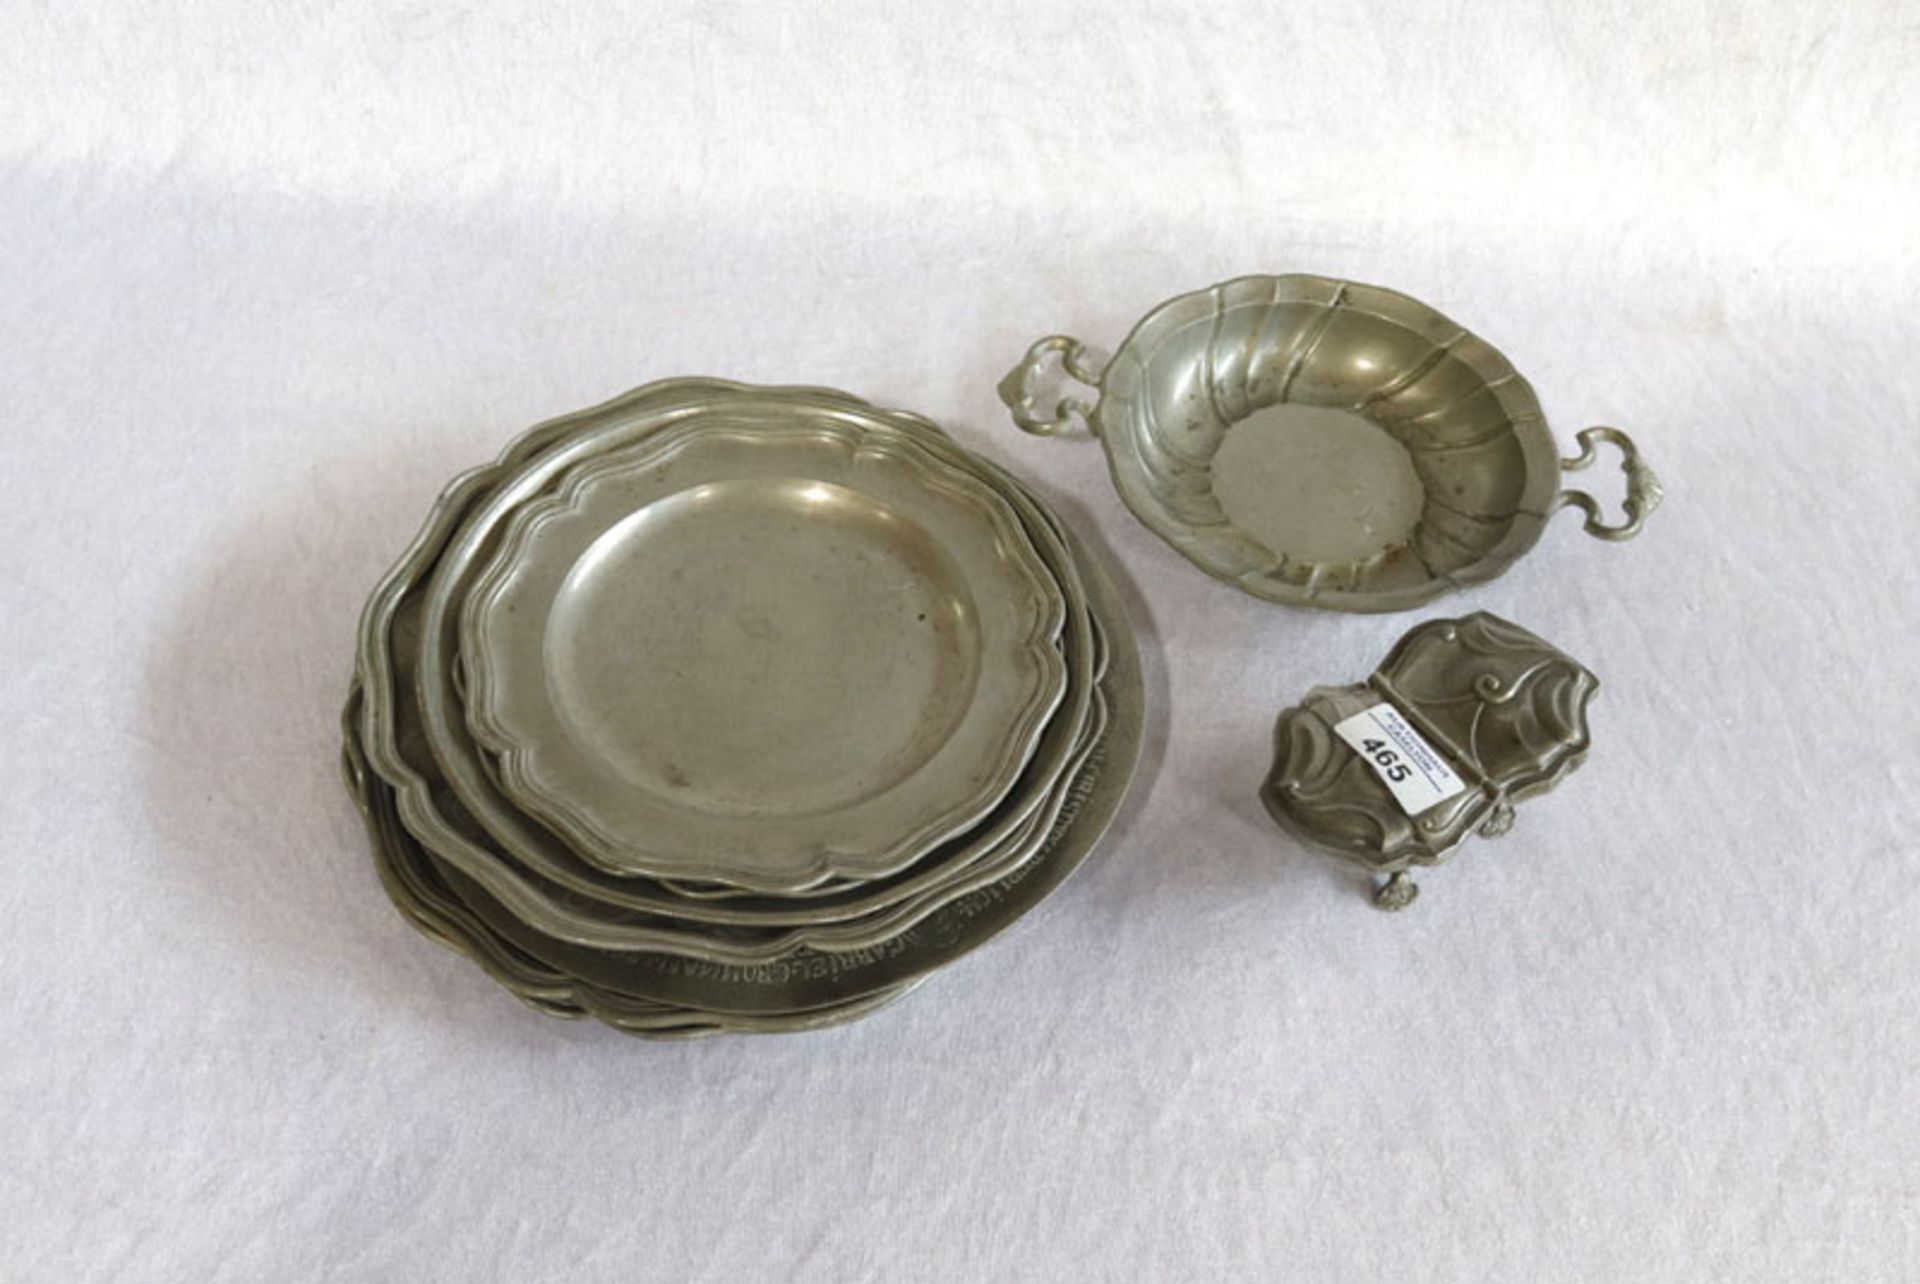 Zinn-Konvolut von 7 Teller, eine Schale und Salzgefäß, ein Teller datiert 1674 Gesellengeschenk,